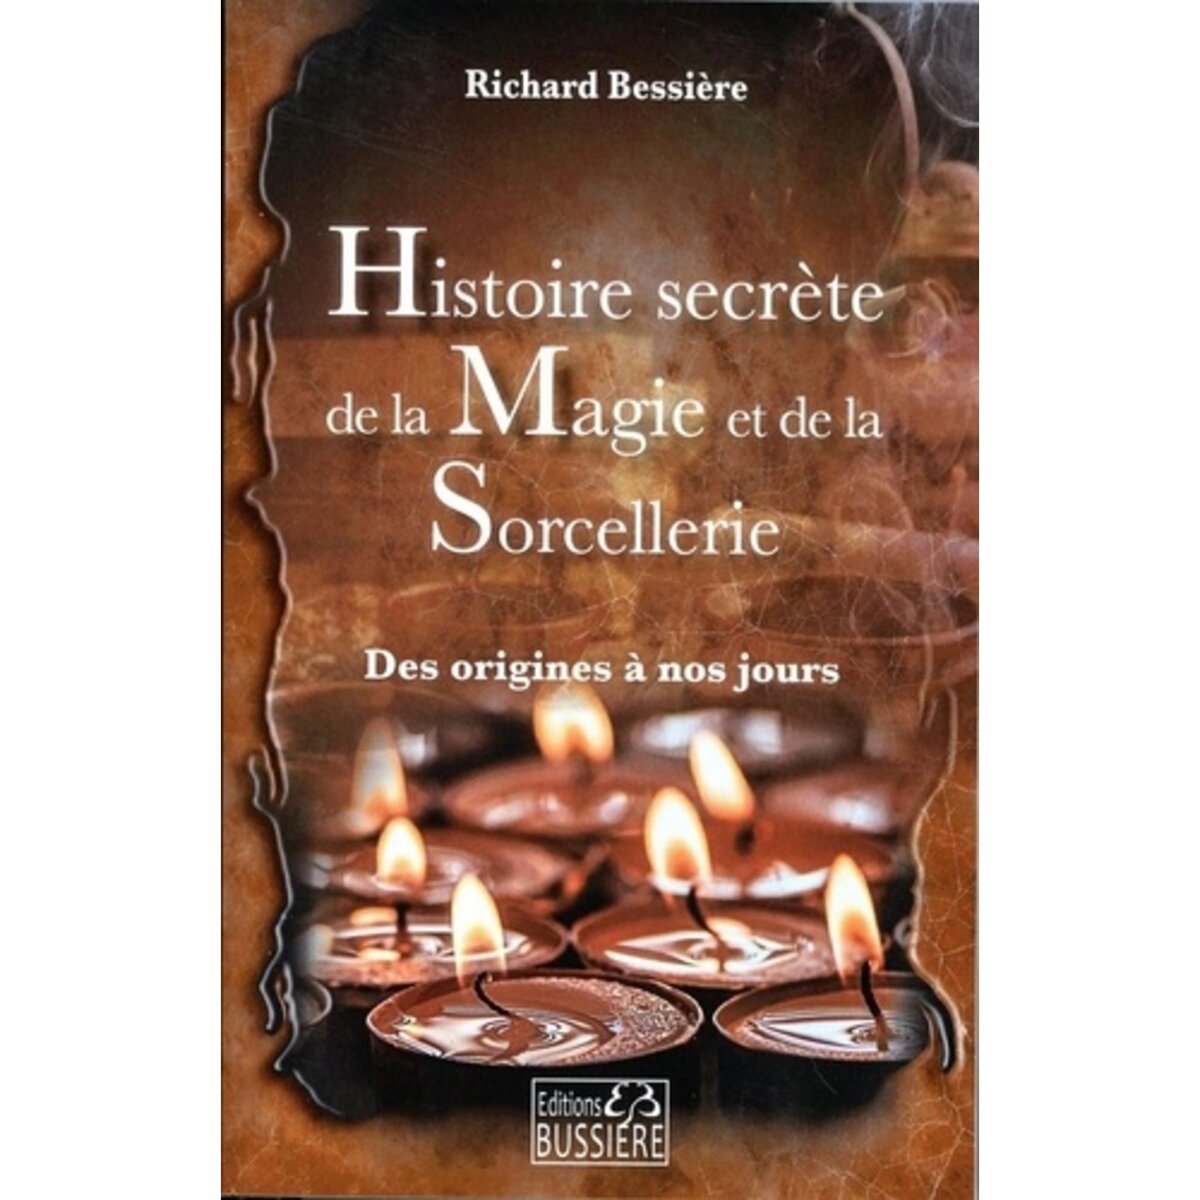  HISTOIRE SECRETE DE LA MAGIE ET DE LA SORCELLERIE. DES ORIGINES A NOS JOURS, Bessière Richard